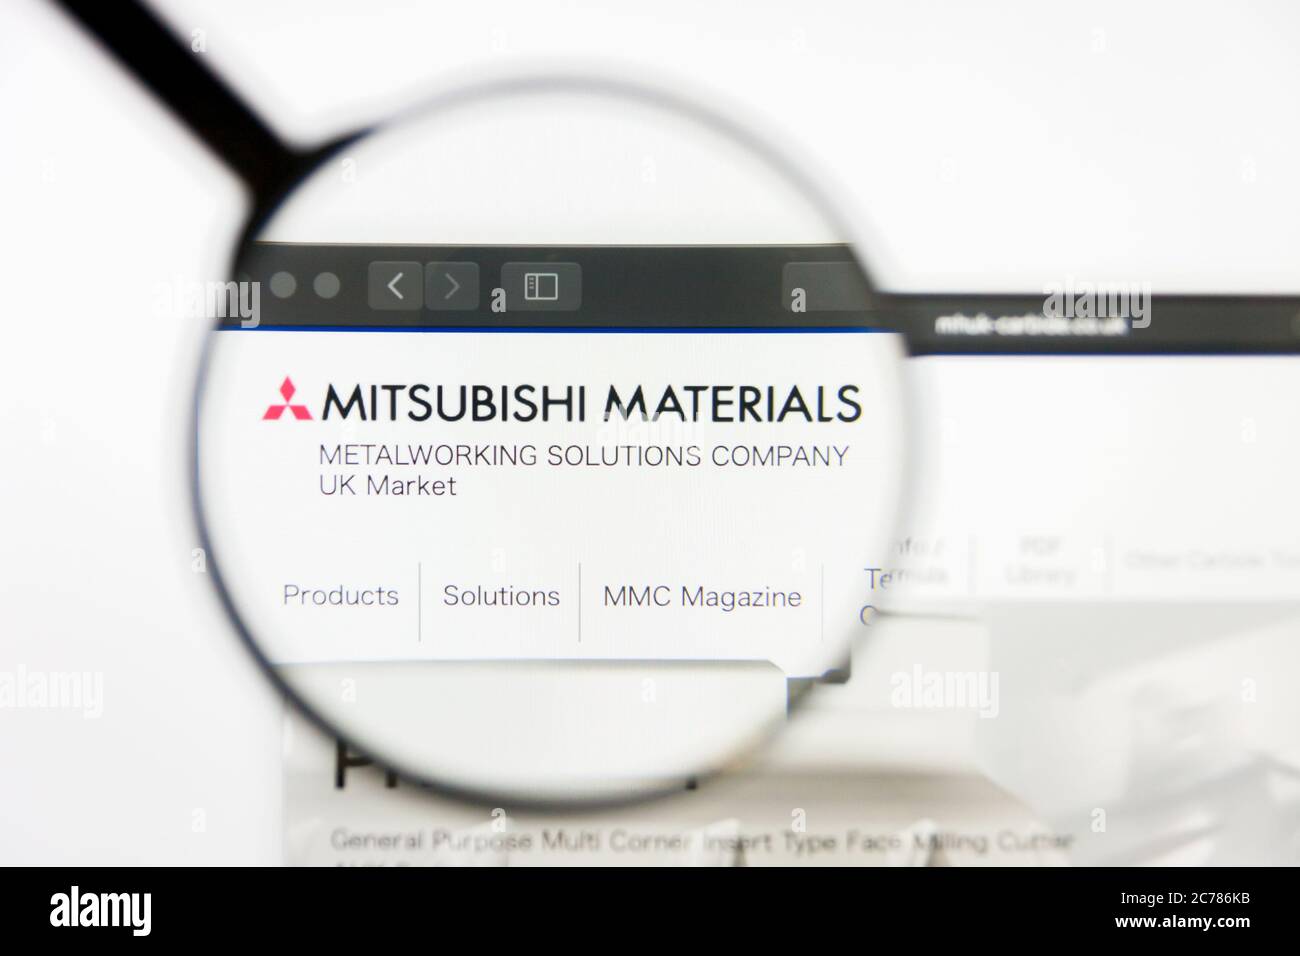 Los Angeles, Californie, Etats-Unis - 10 mars 2019 : Editorial illustratif, page d'accueil du site Web Mitsubishi Materials. Logo Mitsubishi Materials visible sur Banque D'Images